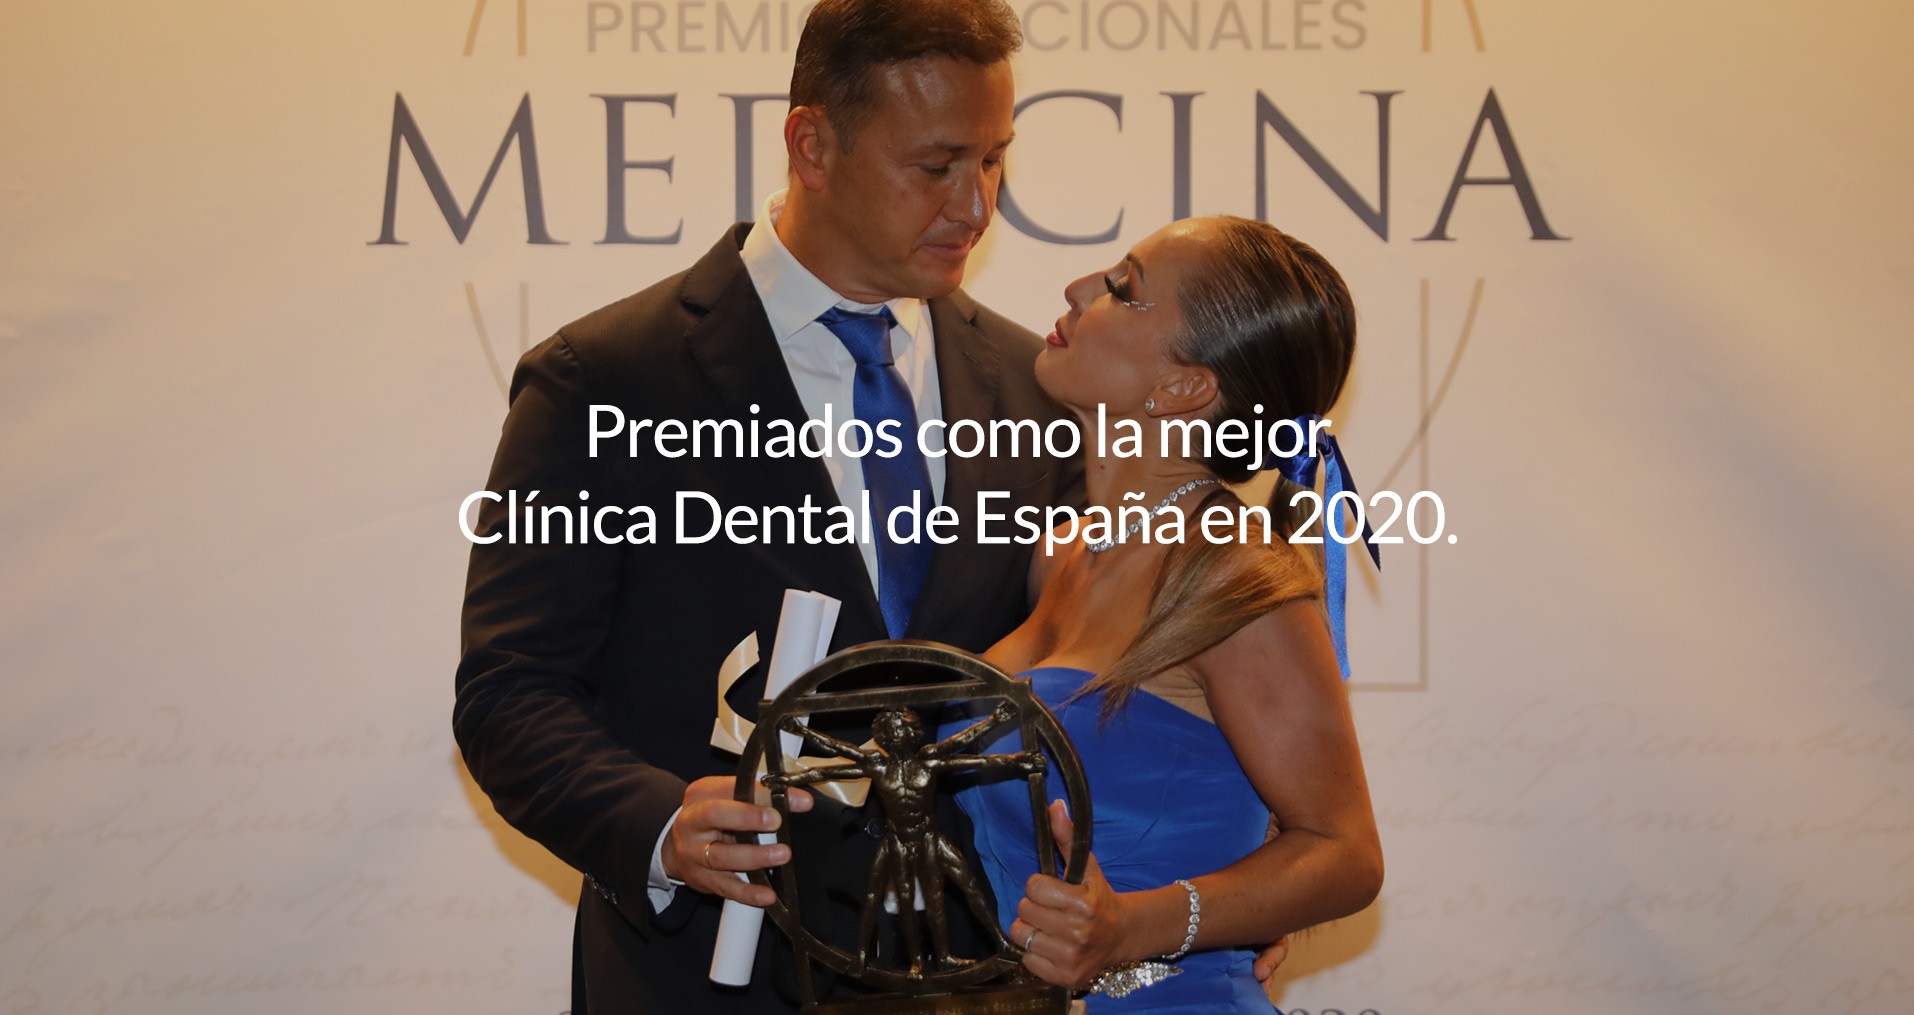 https://herreraycores.com/dentista/premiados-como-la-mejor-clinica-dental-de-espana-2020/gmx-niv48-con809.htm